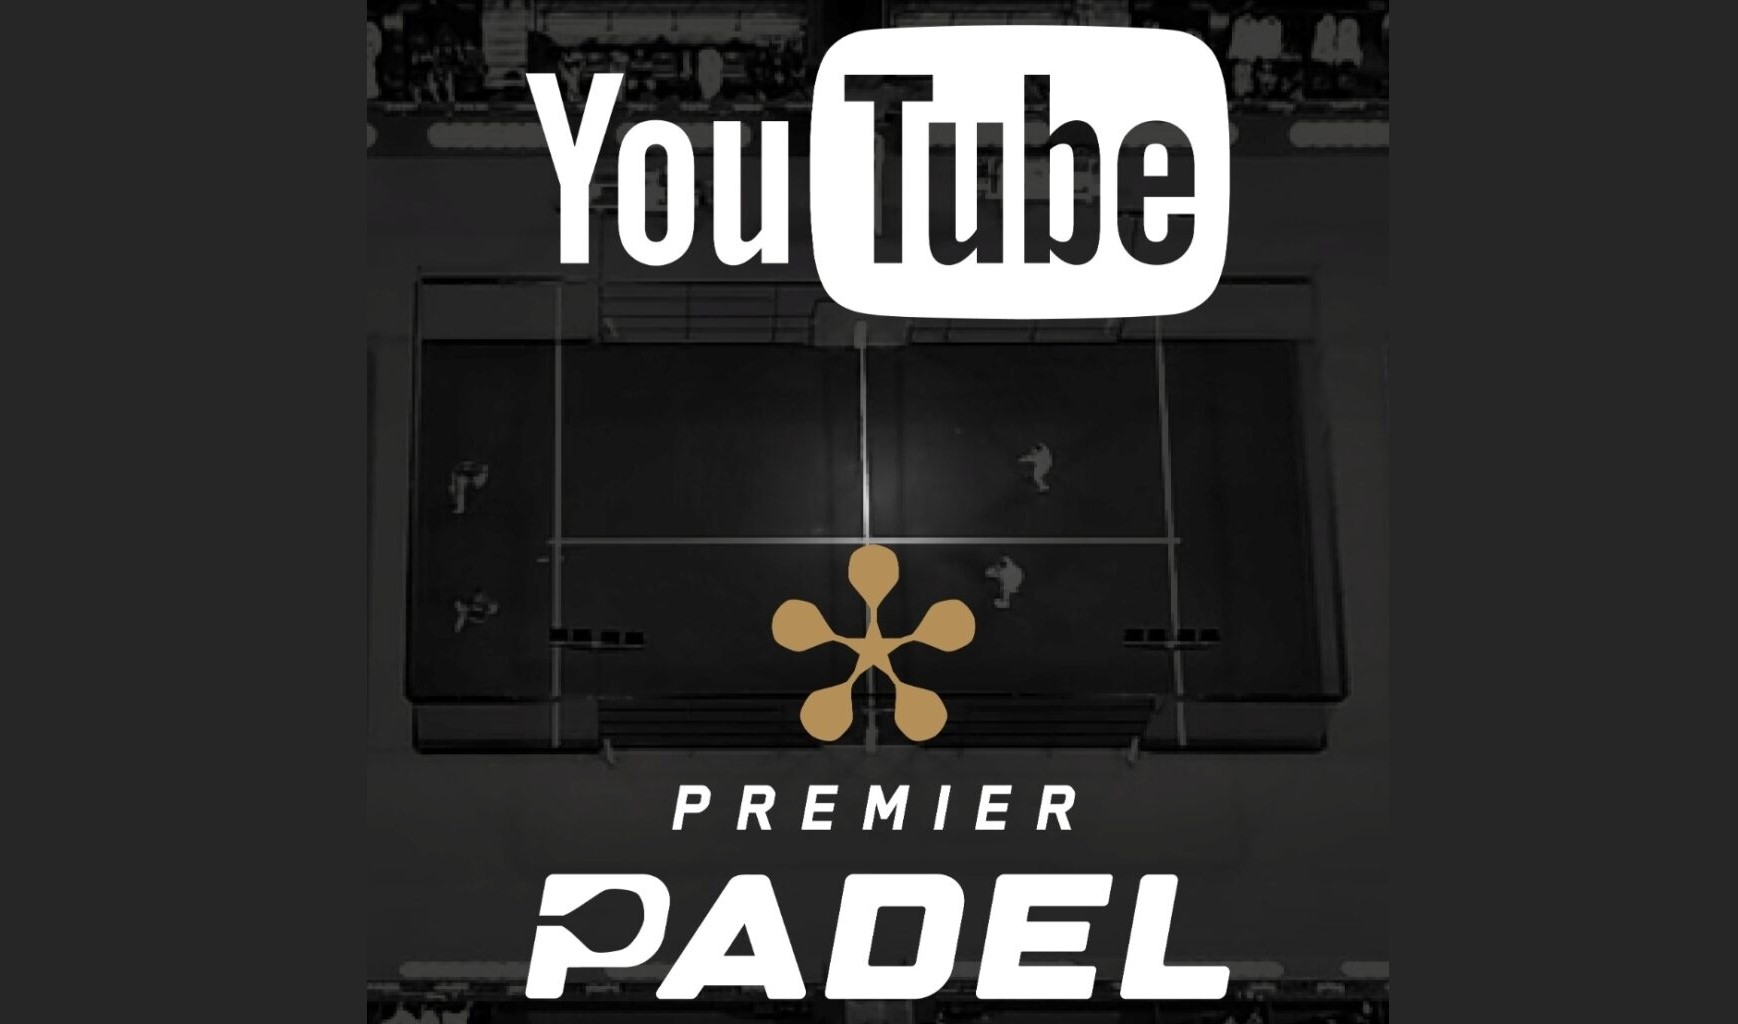 Premier Padel auf Youtube in Spanien ausgestrahlt